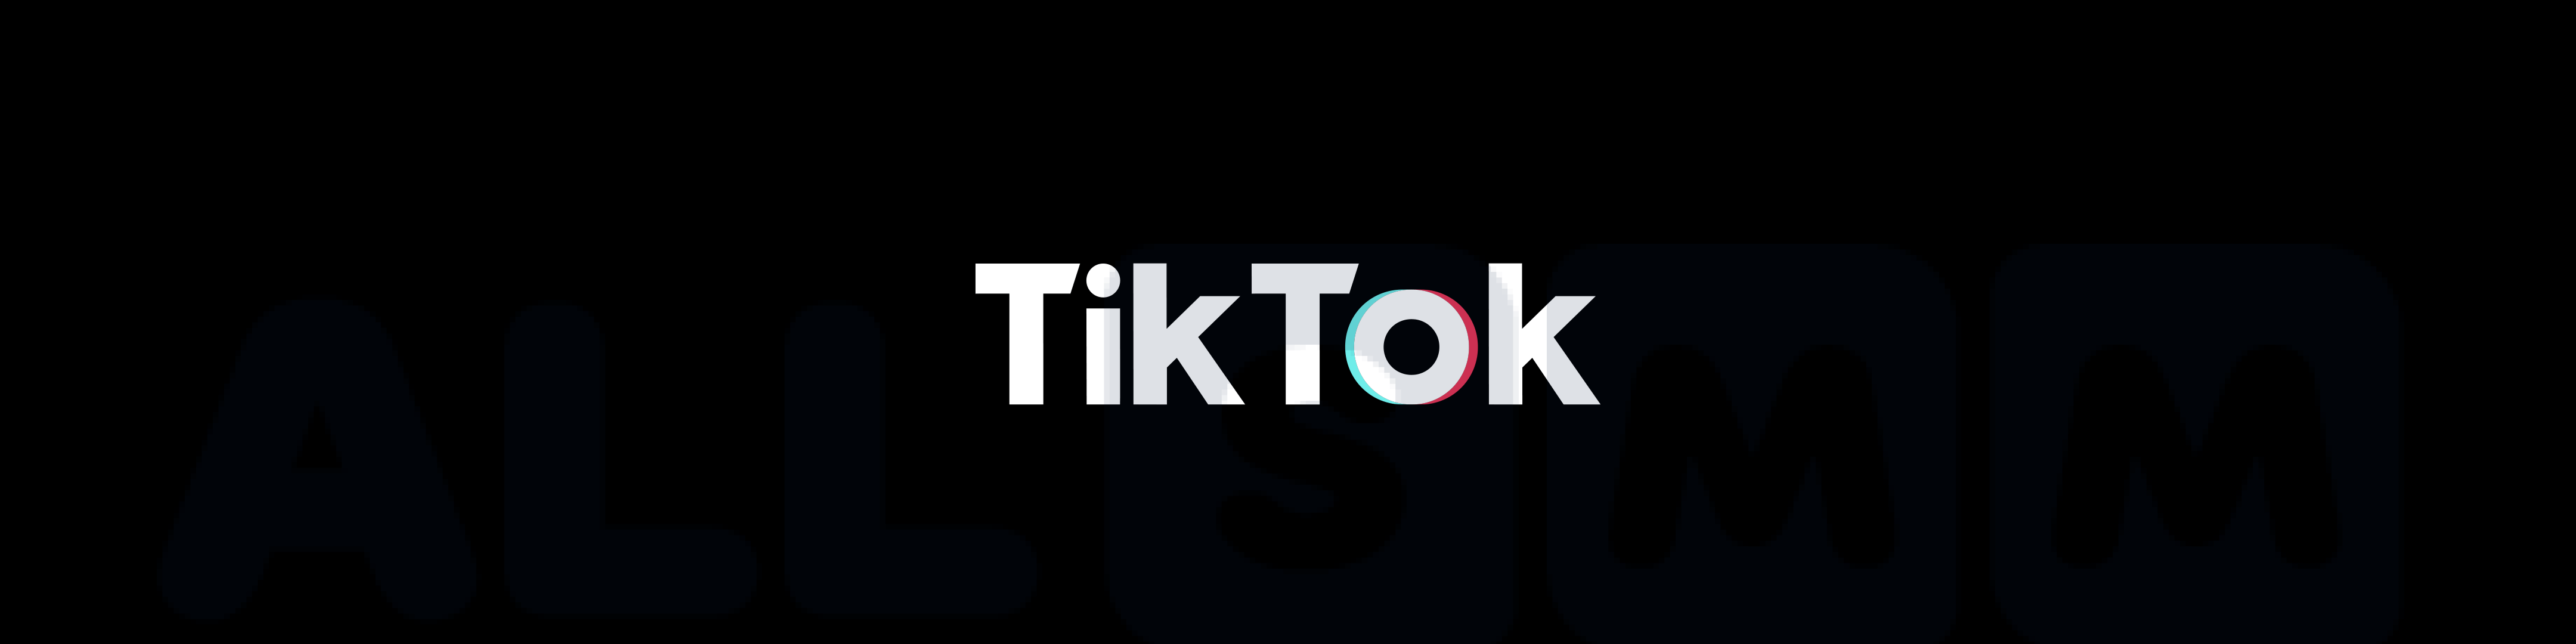 TikTok: Advantages of Using the Platform